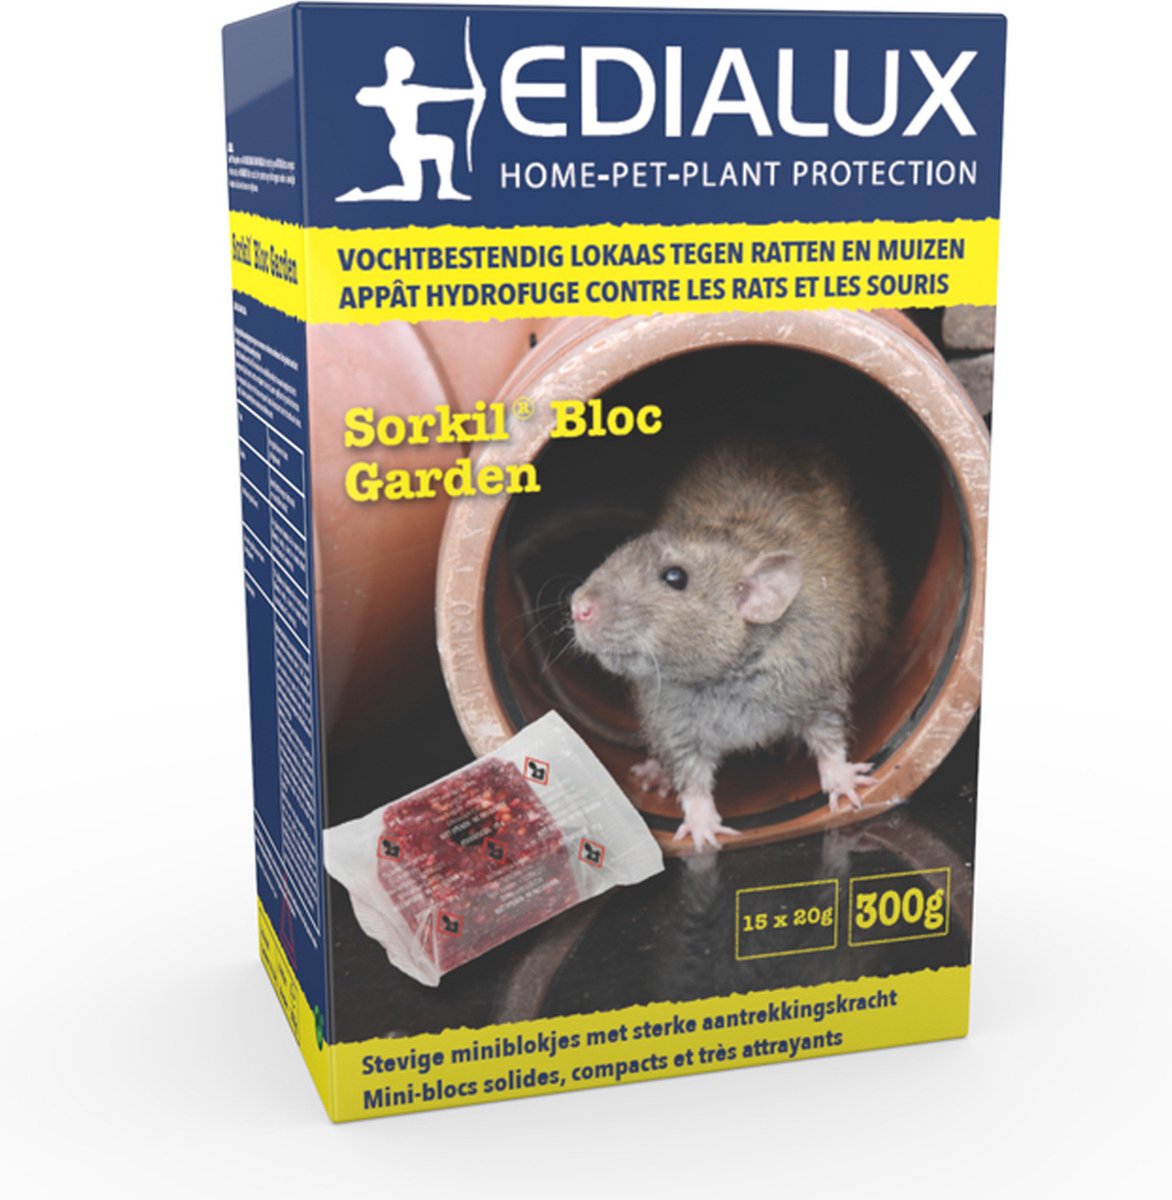 Raticide en bloc paraffiné pour rats et souris Clac 300g